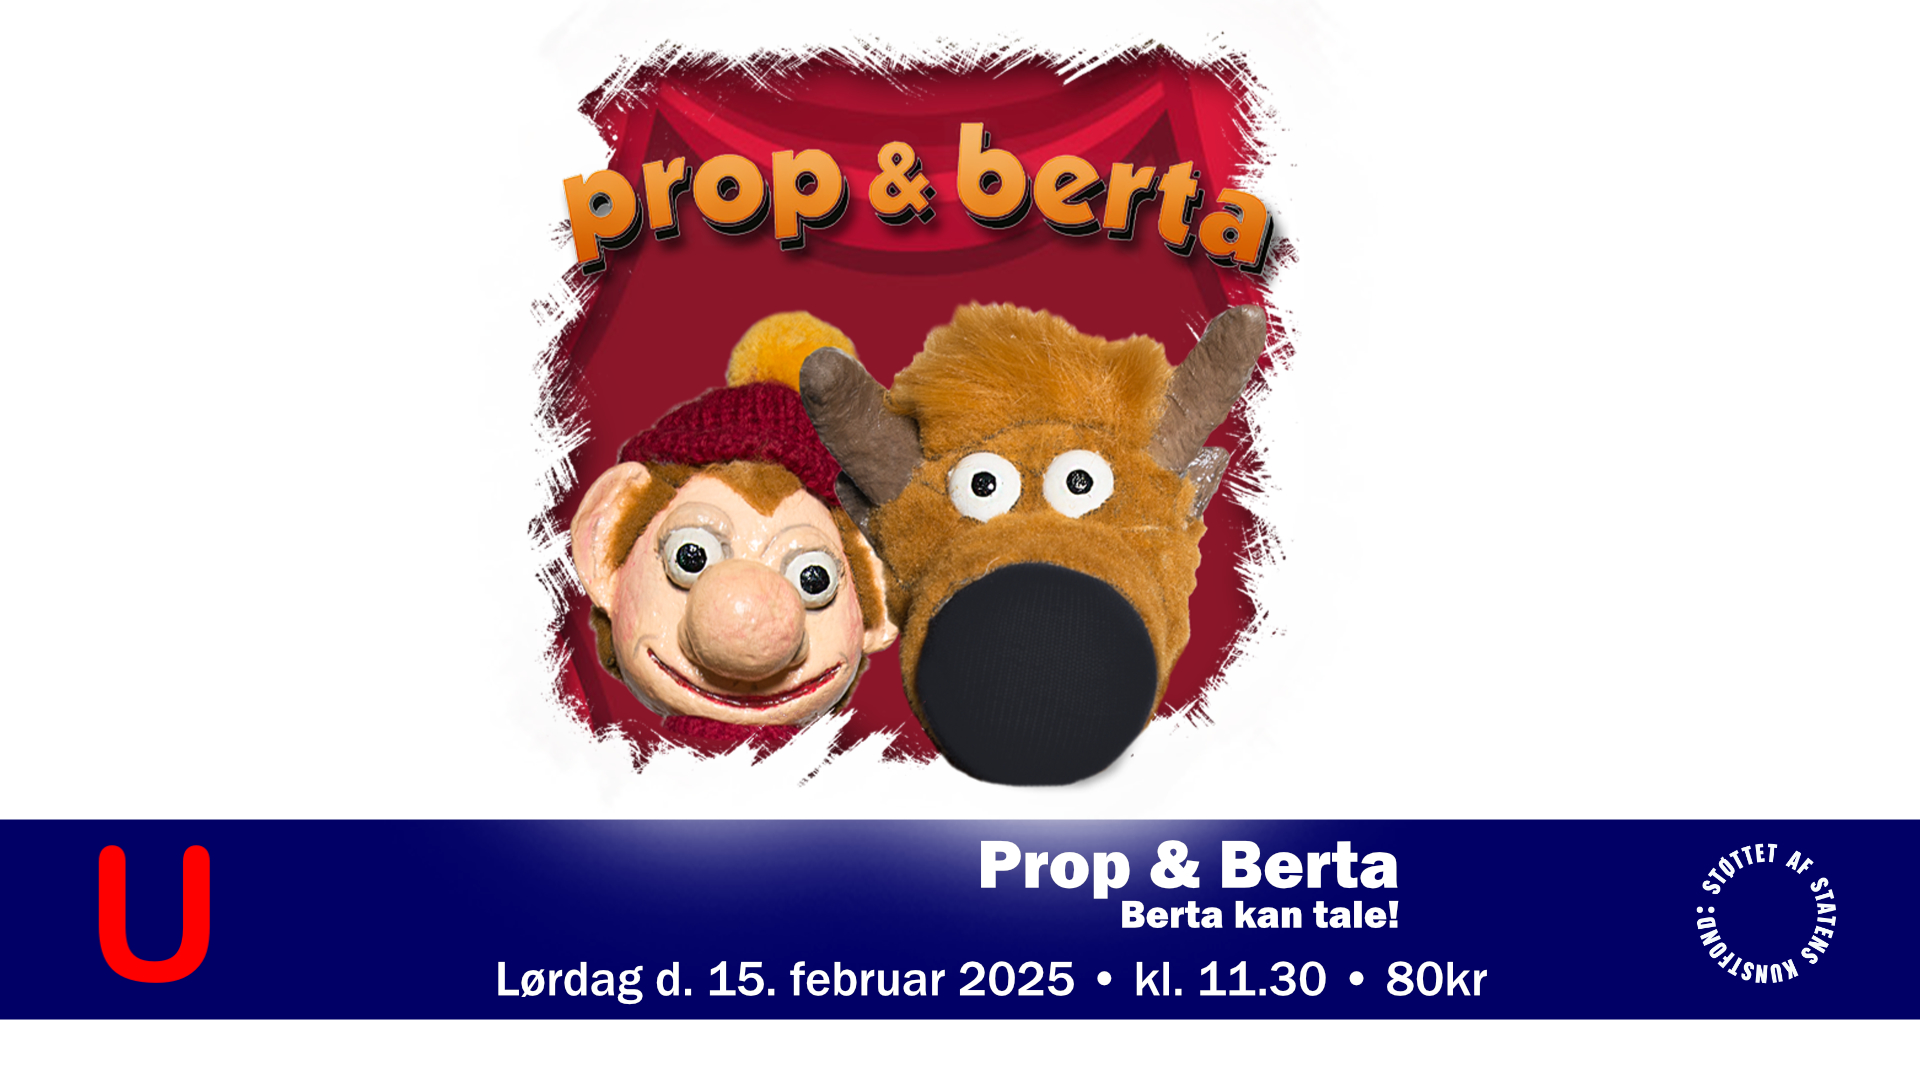 Prop og Berta - Berta kan tale! - 15-02-2025 11:30